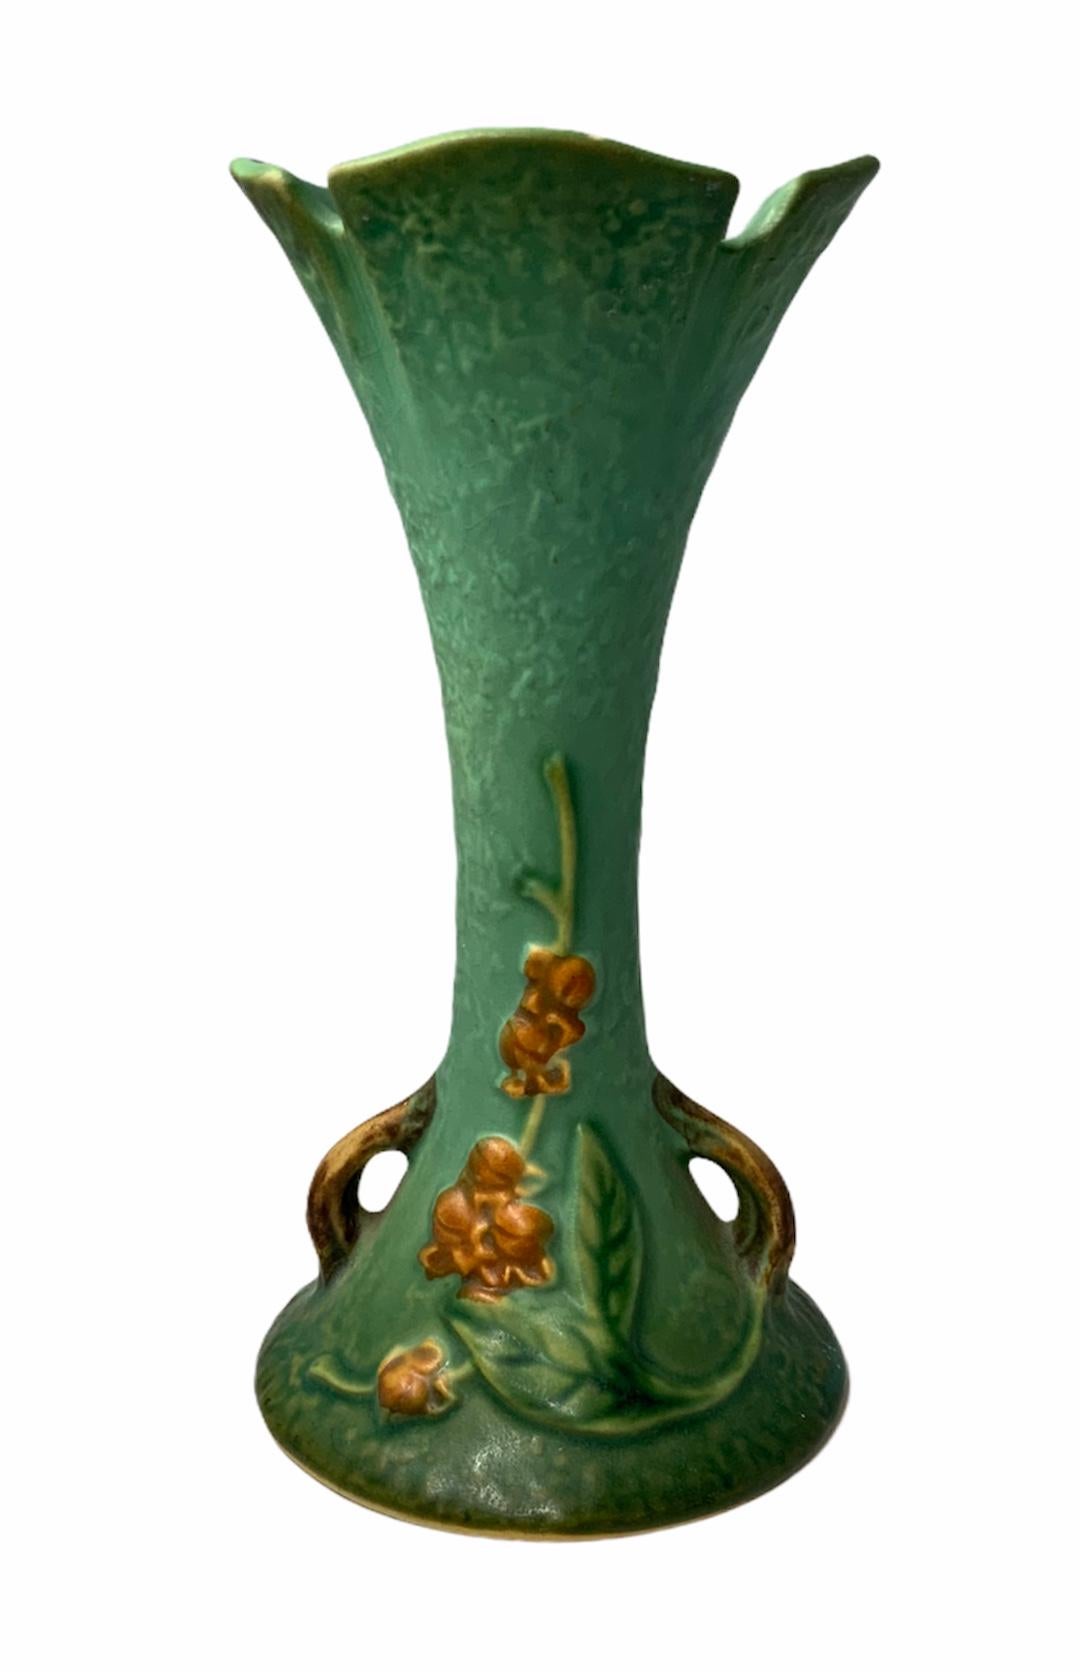 Repoussé Roseville Pottery Bittersweet Flower Vase